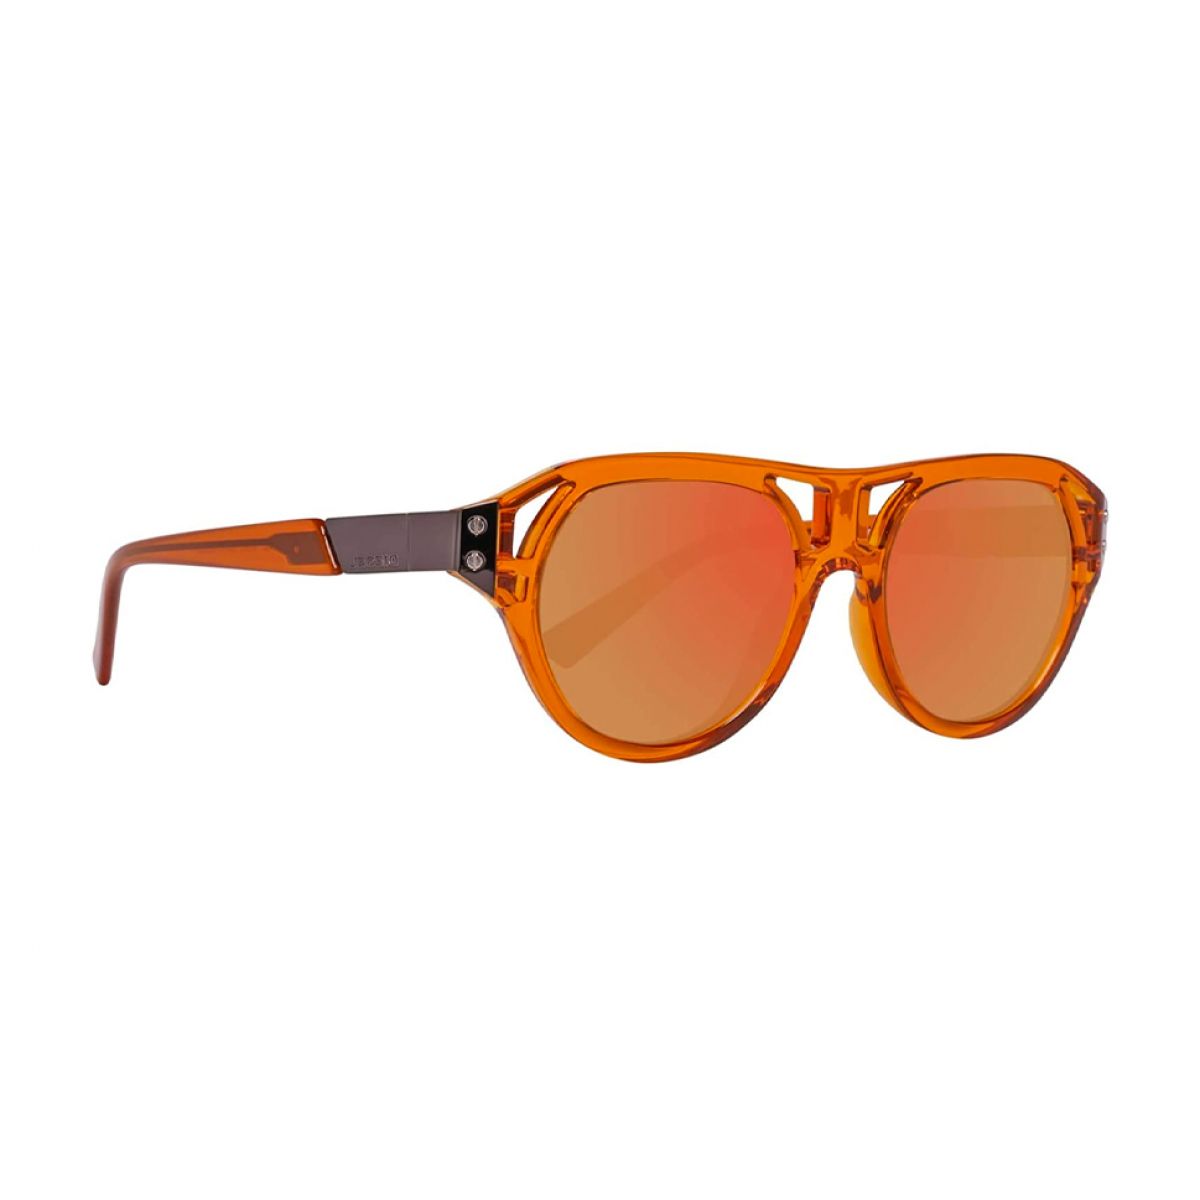 Diesel Sunglasses DL0233 42L 51 Maat 51x19x145